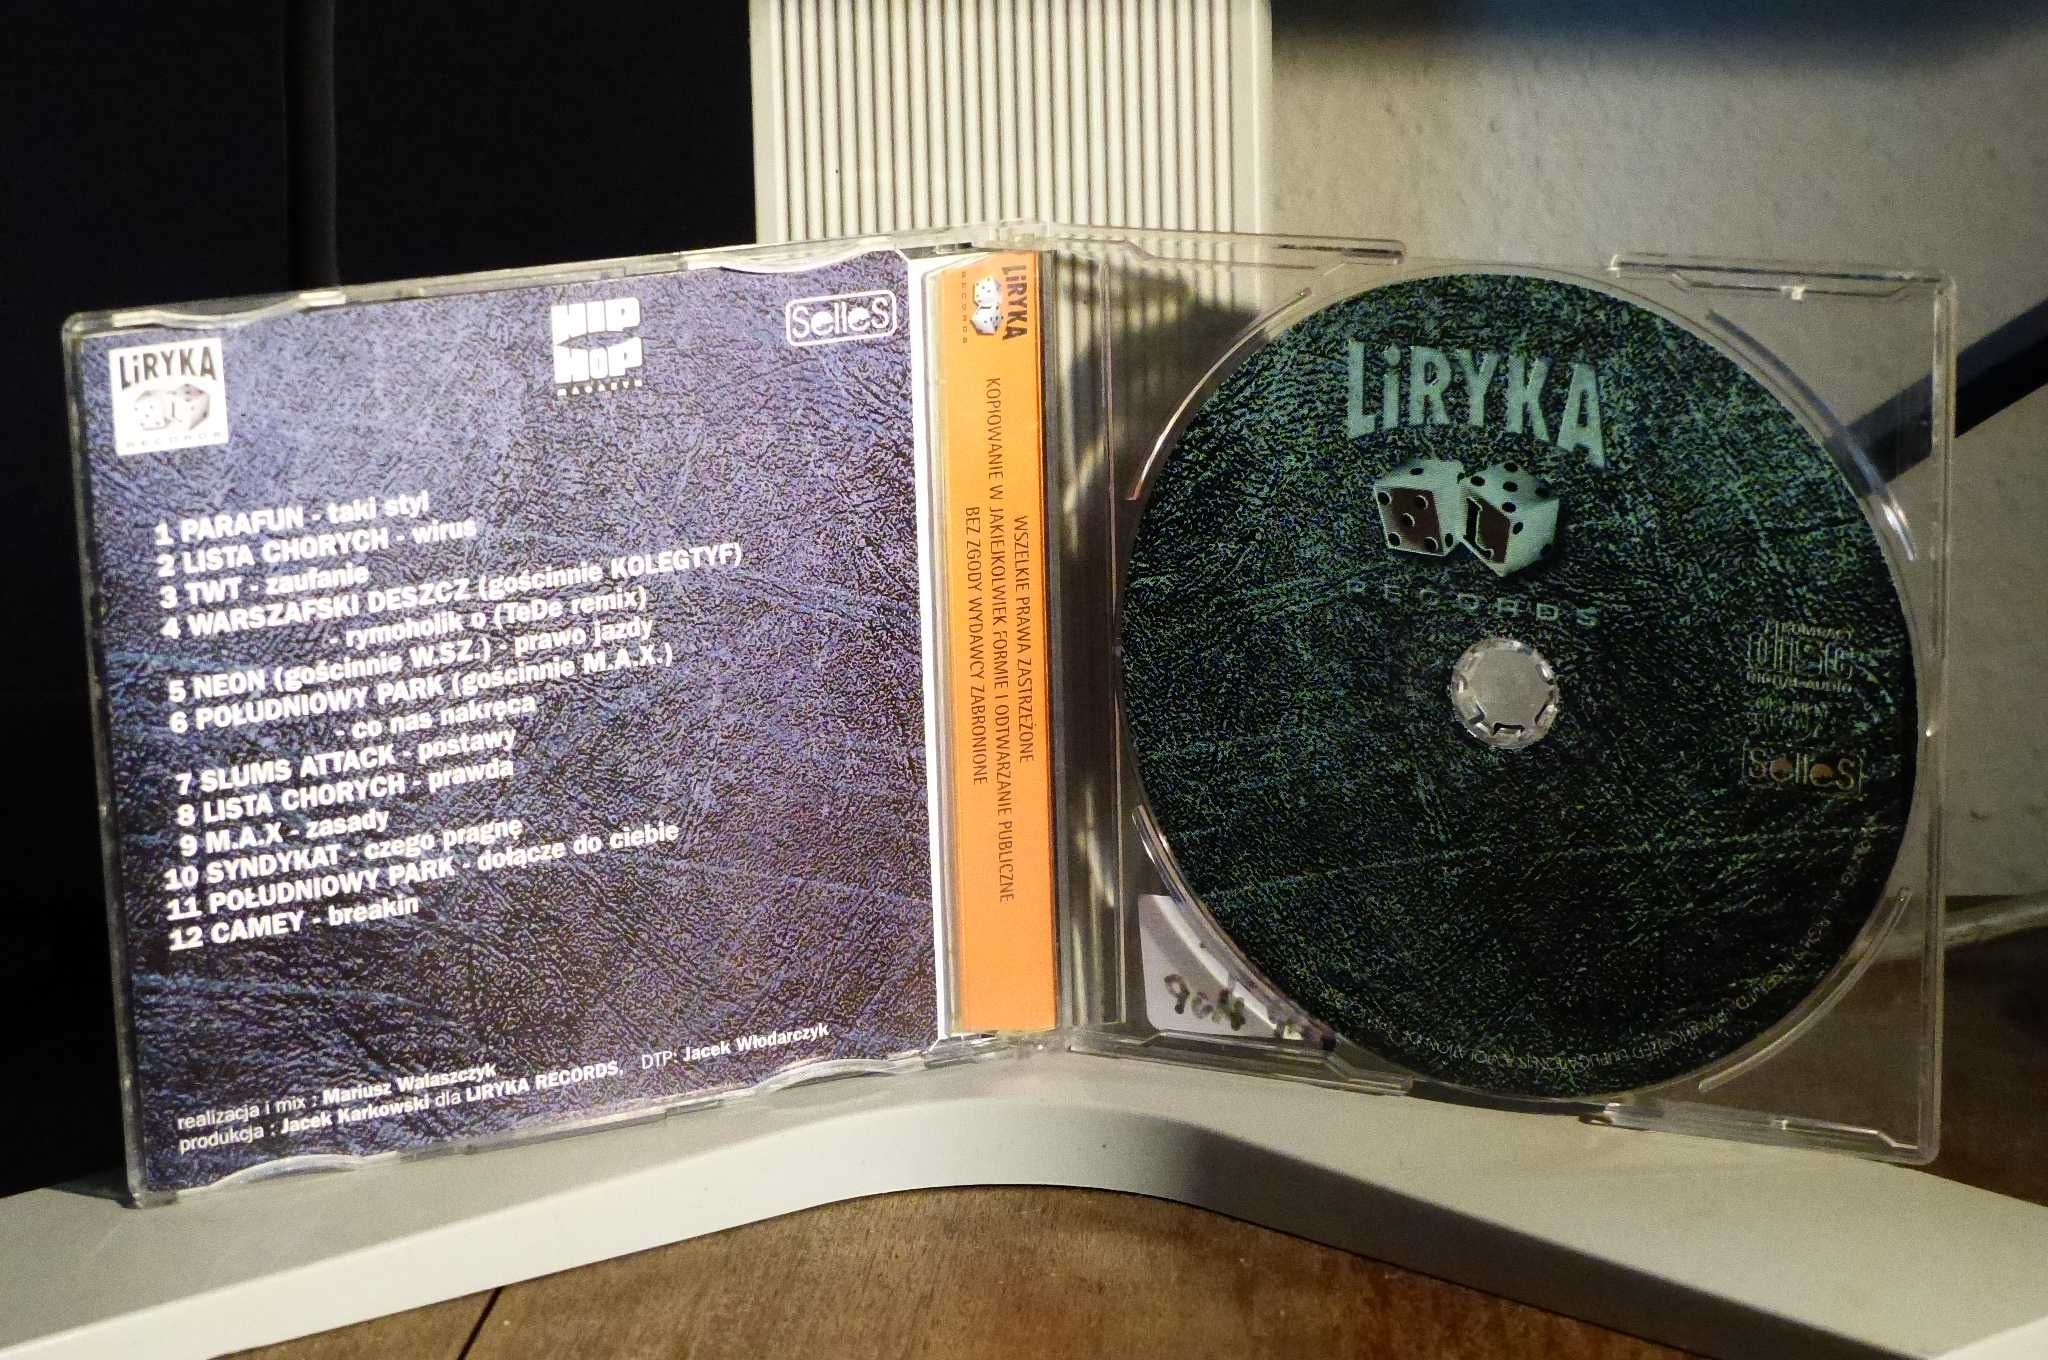 CD Liryka Records Selles Slums Attack Warszafski Deszcz Camey Syndykat